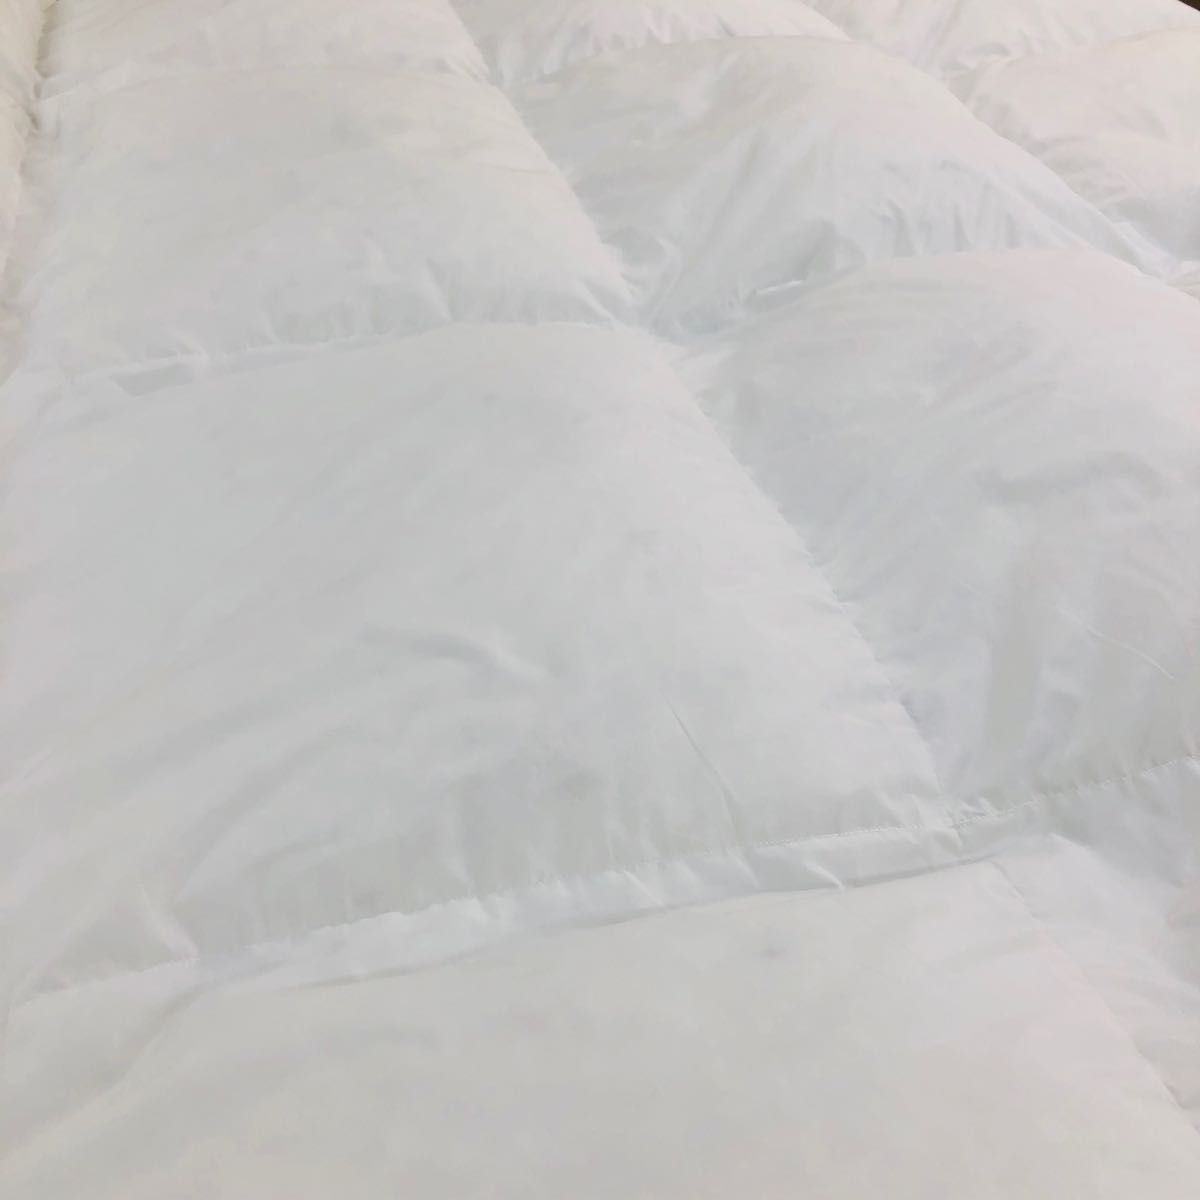 羽毛布団 セミダブル ニューゴールド 白色 日本製 170×210cm